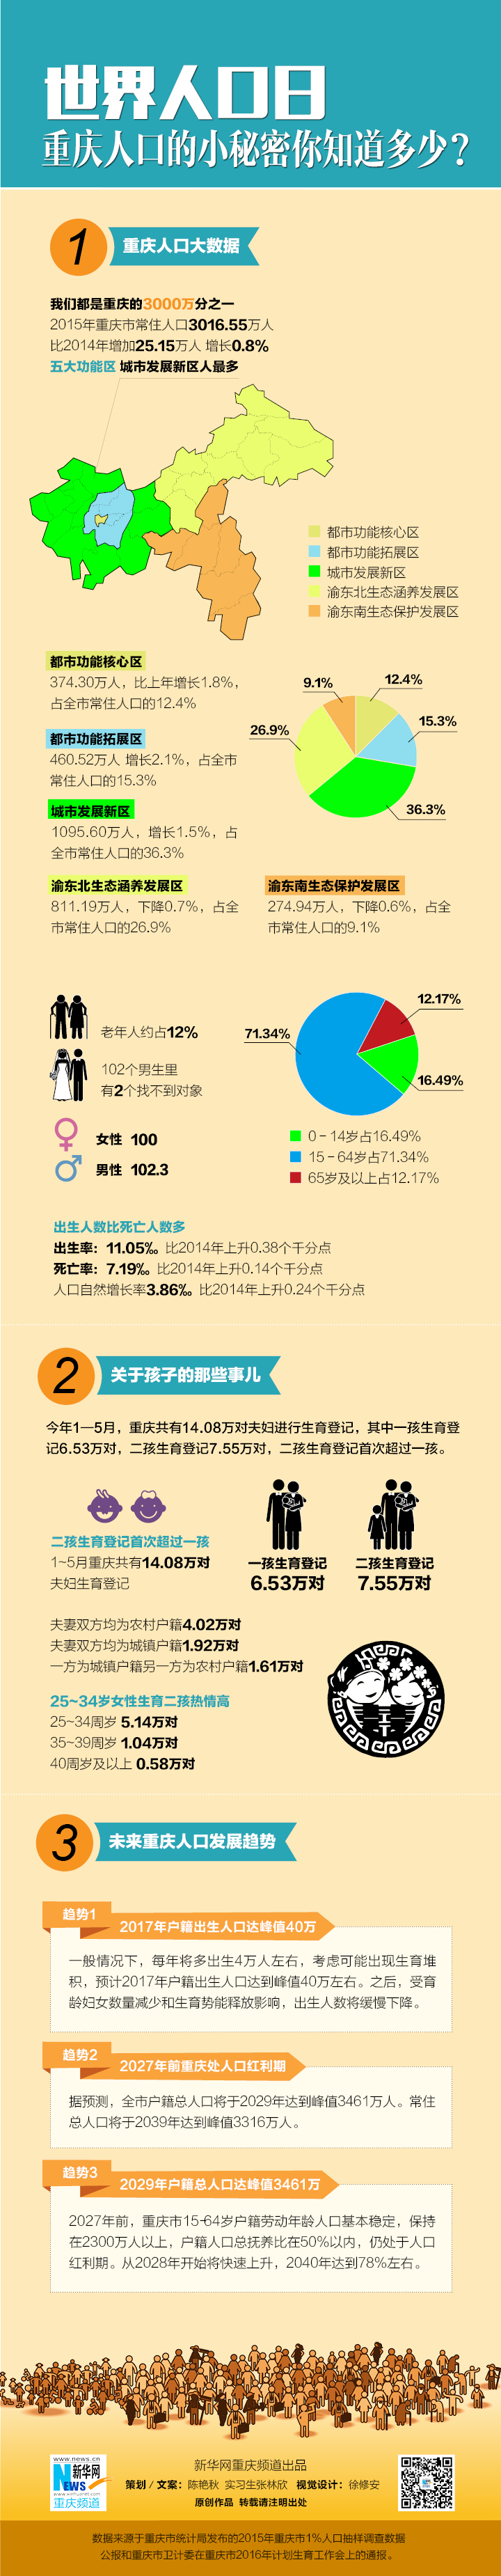 世界人口日 图解重庆人口的小秘密